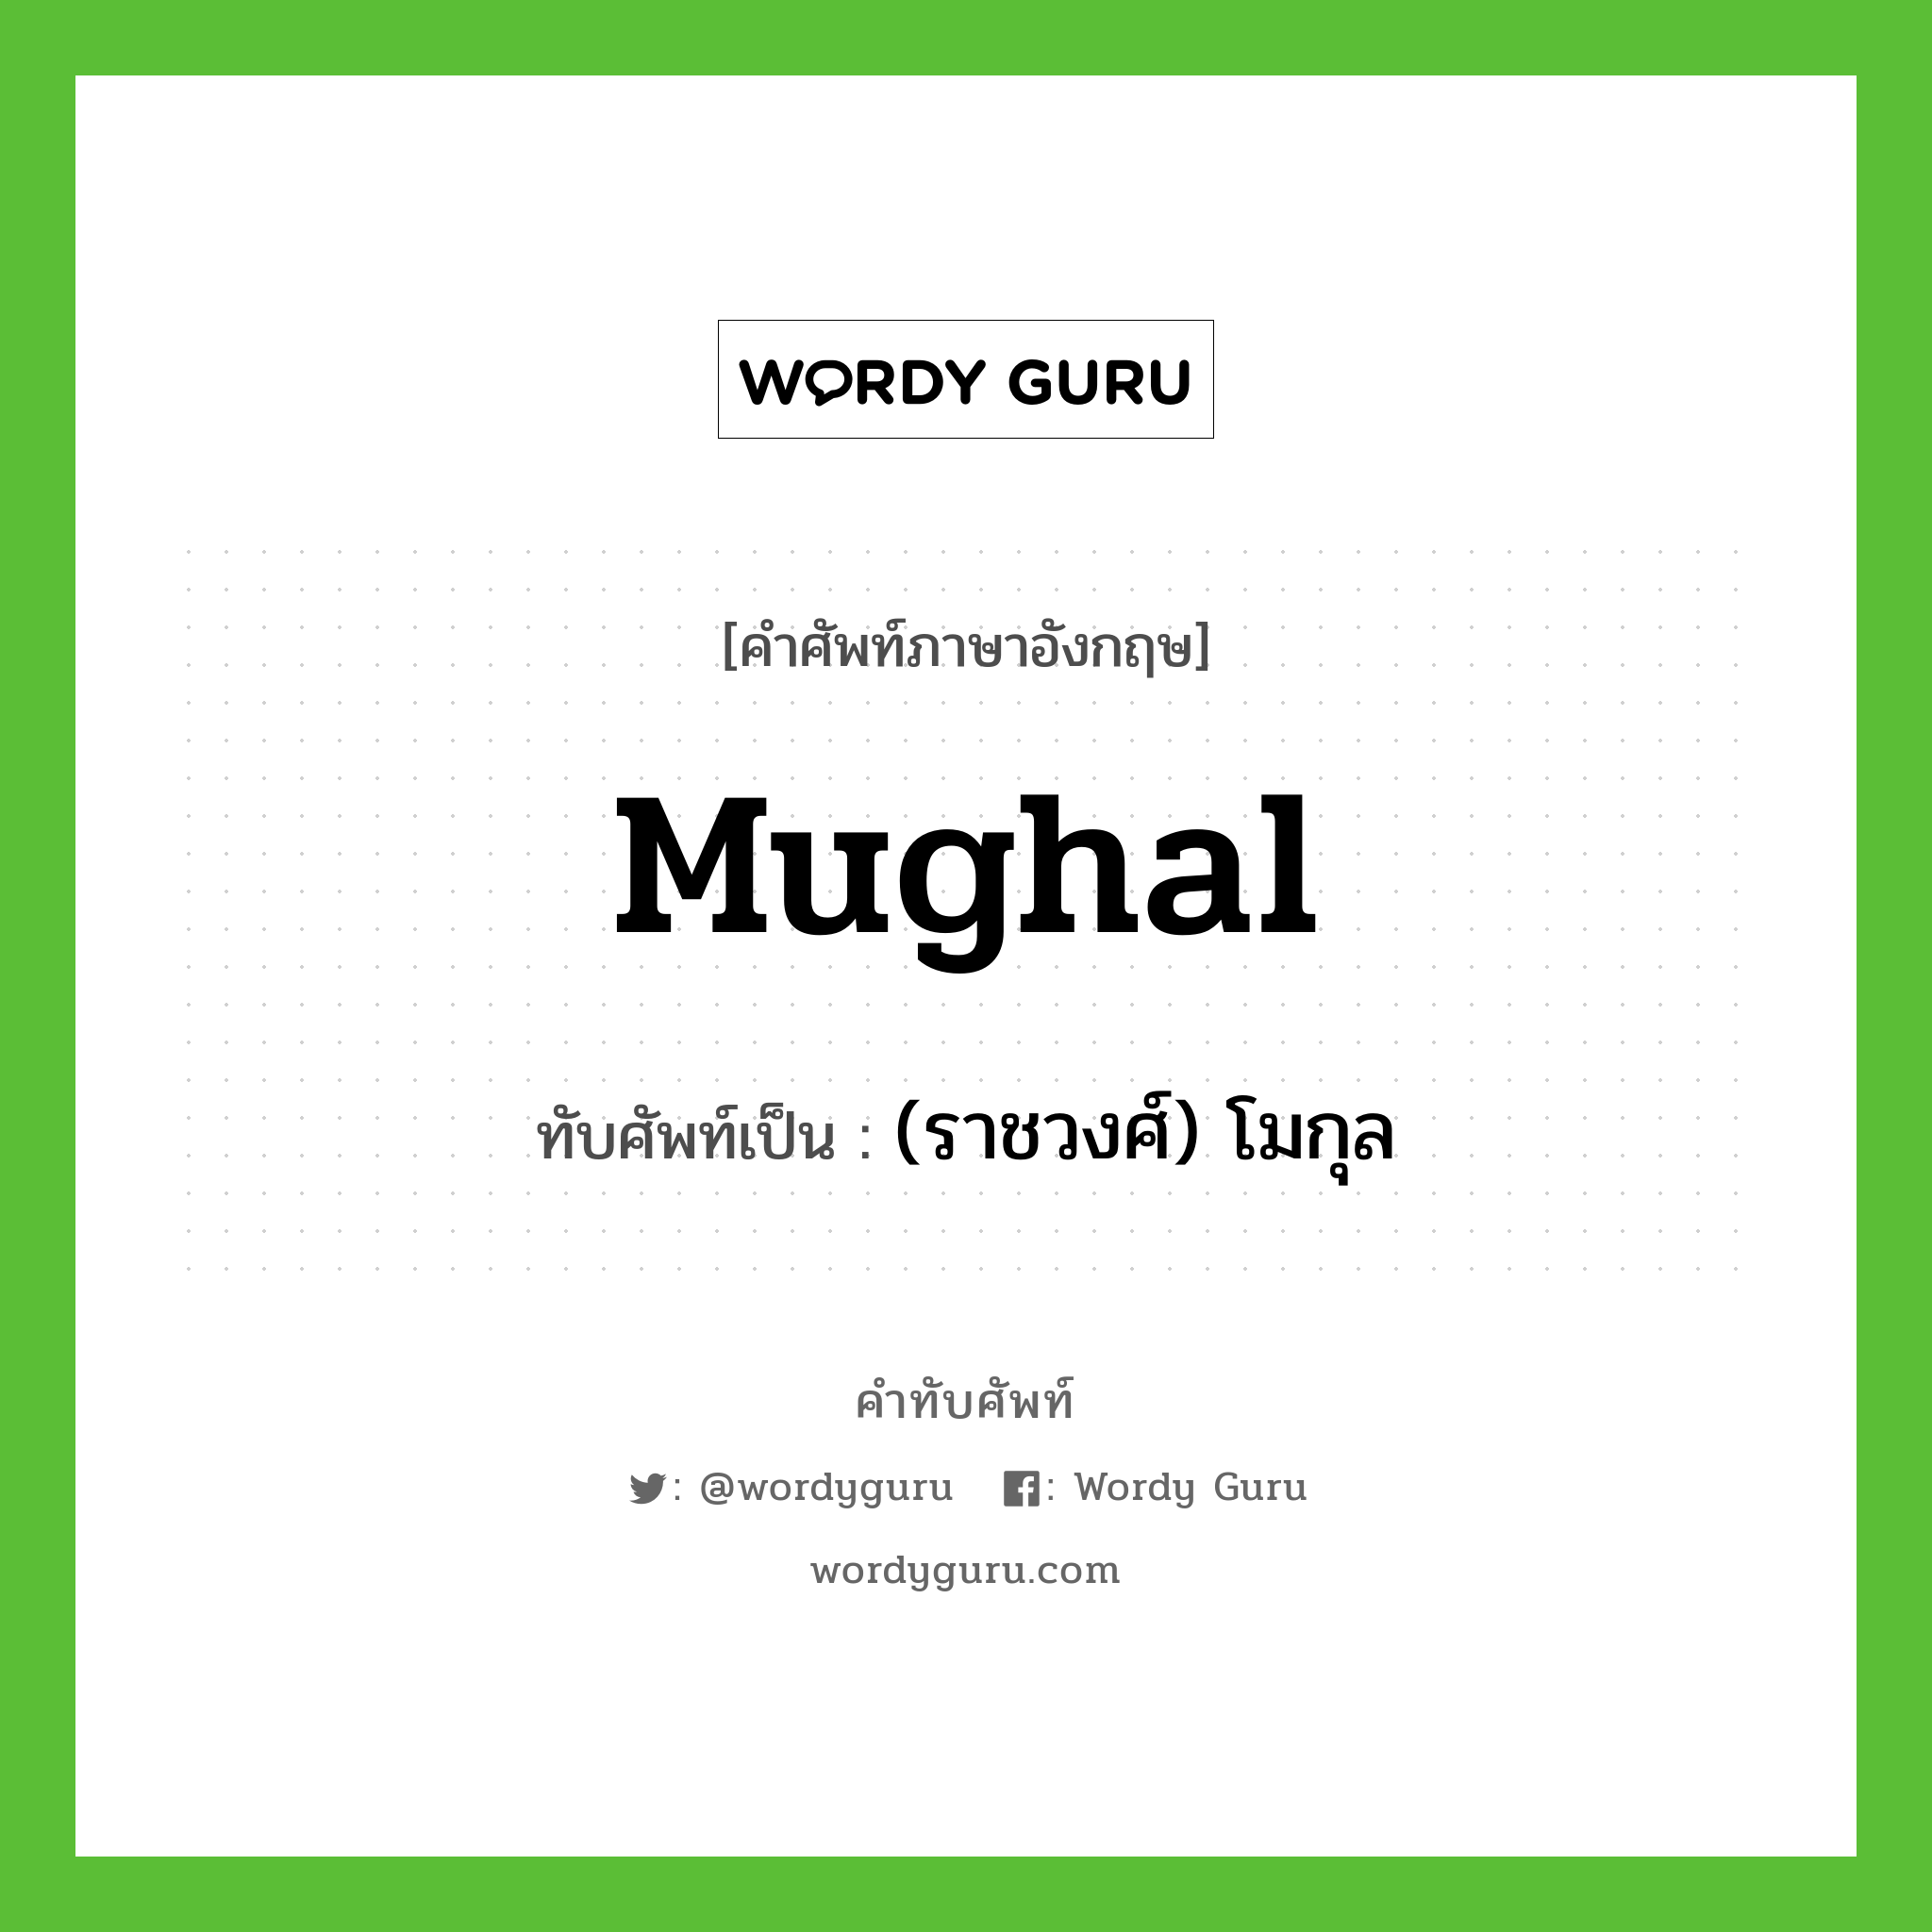 (ราชวงศ์) โมกุล เขียนอย่างไร?, คำศัพท์ภาษาอังกฤษ (ราชวงศ์) โมกุล ทับศัพท์เป็น Mughal